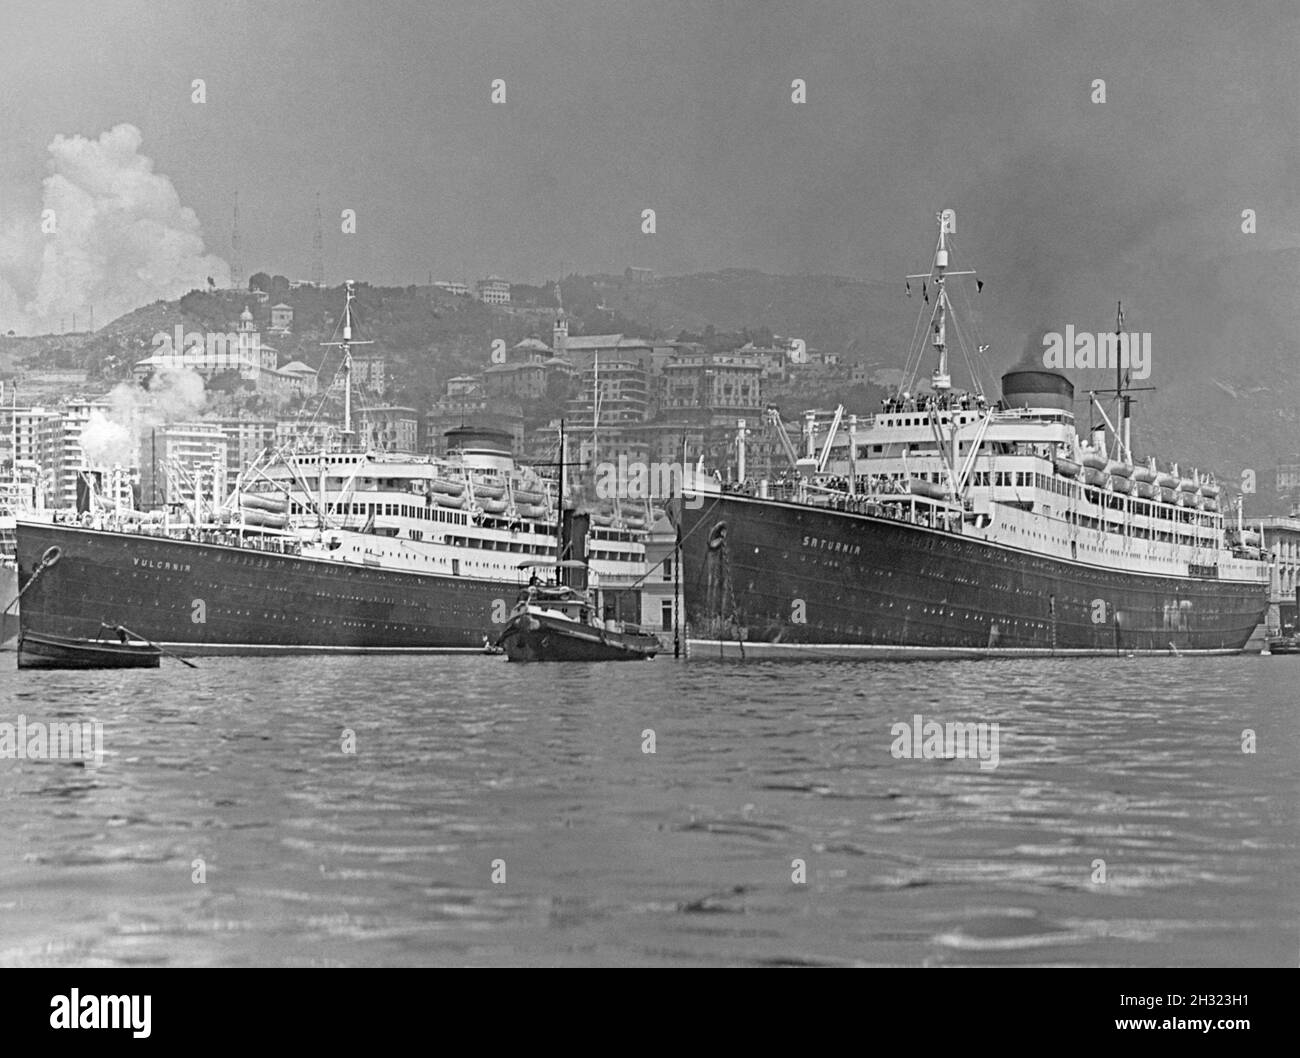 Der Hafen von Triest, Italien in den 1930er Jahren. Zwei Ozeandampfer befinden sich im Hafen – die Schwesterschiffe MS Saturnia (links) und MS Vulcania (rechts), die mit Rauchschwaden und einem Schlepper den Hafen verlassen wollen. MS Saturnia war ein italienischer Ozeandampfer, der 1925 ins Leben gerufen wurde. Sie war das Schwesterschiff MS Vulcania, das im nächsten Jahr auf den Markt kam – ein Vintage-Foto aus den 1930er Jahren. Stockfoto